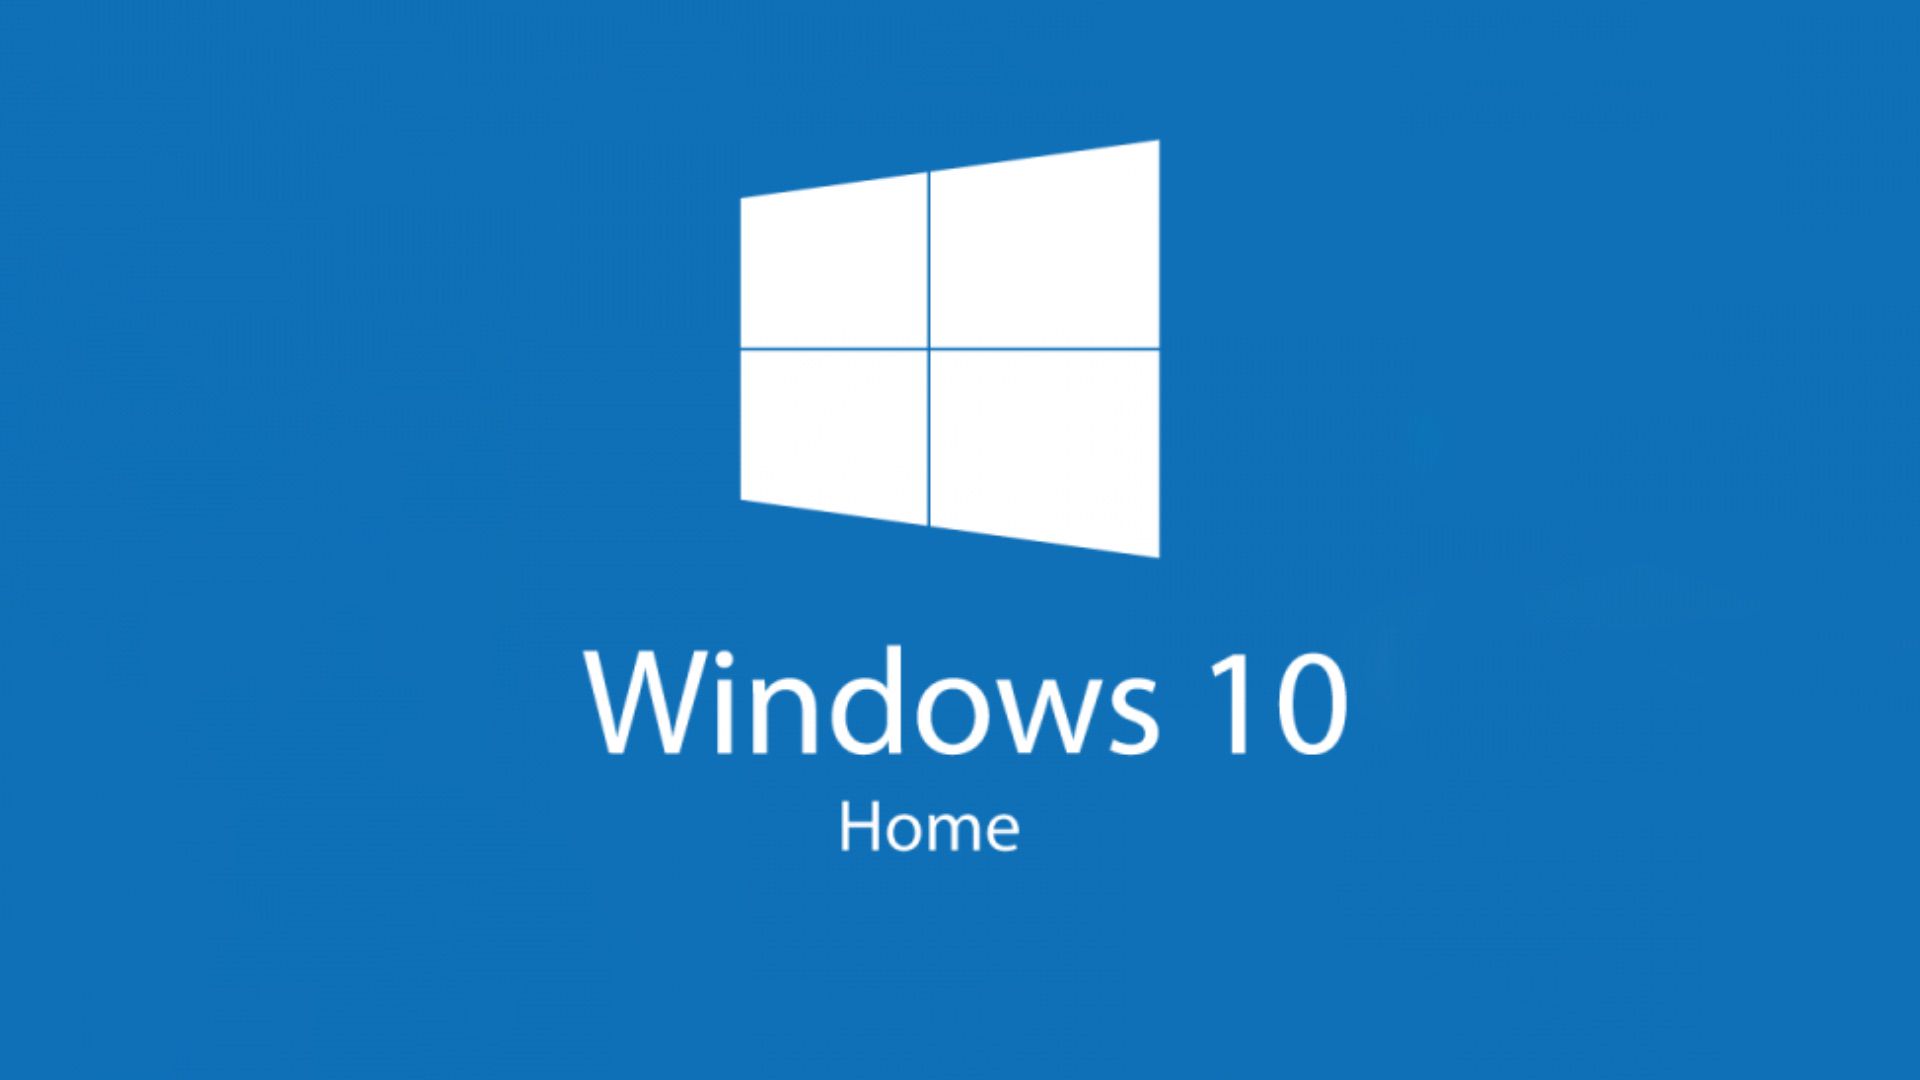 Windows home key. Microsoft Windows 10 домашняя. Виндовс 10 хоум. Логотип Windows 10. Виндовс 11.